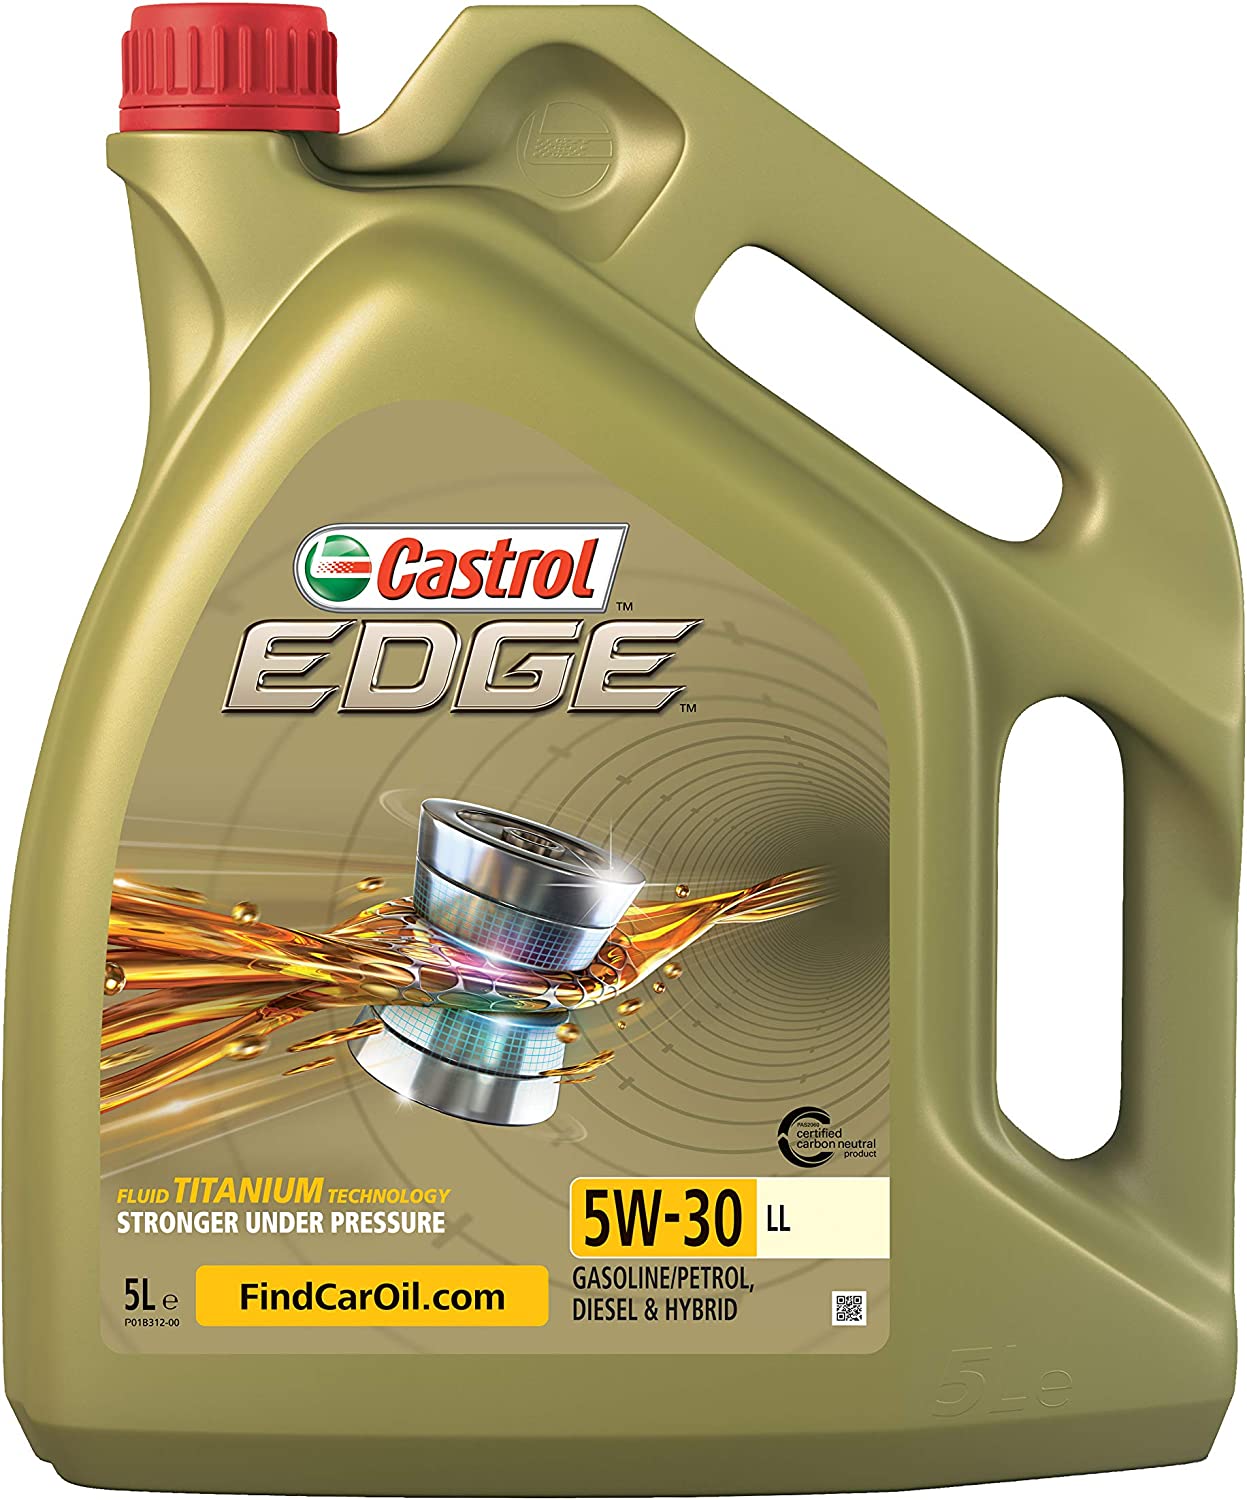 Bild zu 5 Liter Motoröl Castrol Edge 5W-30 LL für 38,24€ (Vergleich: 48,99€)